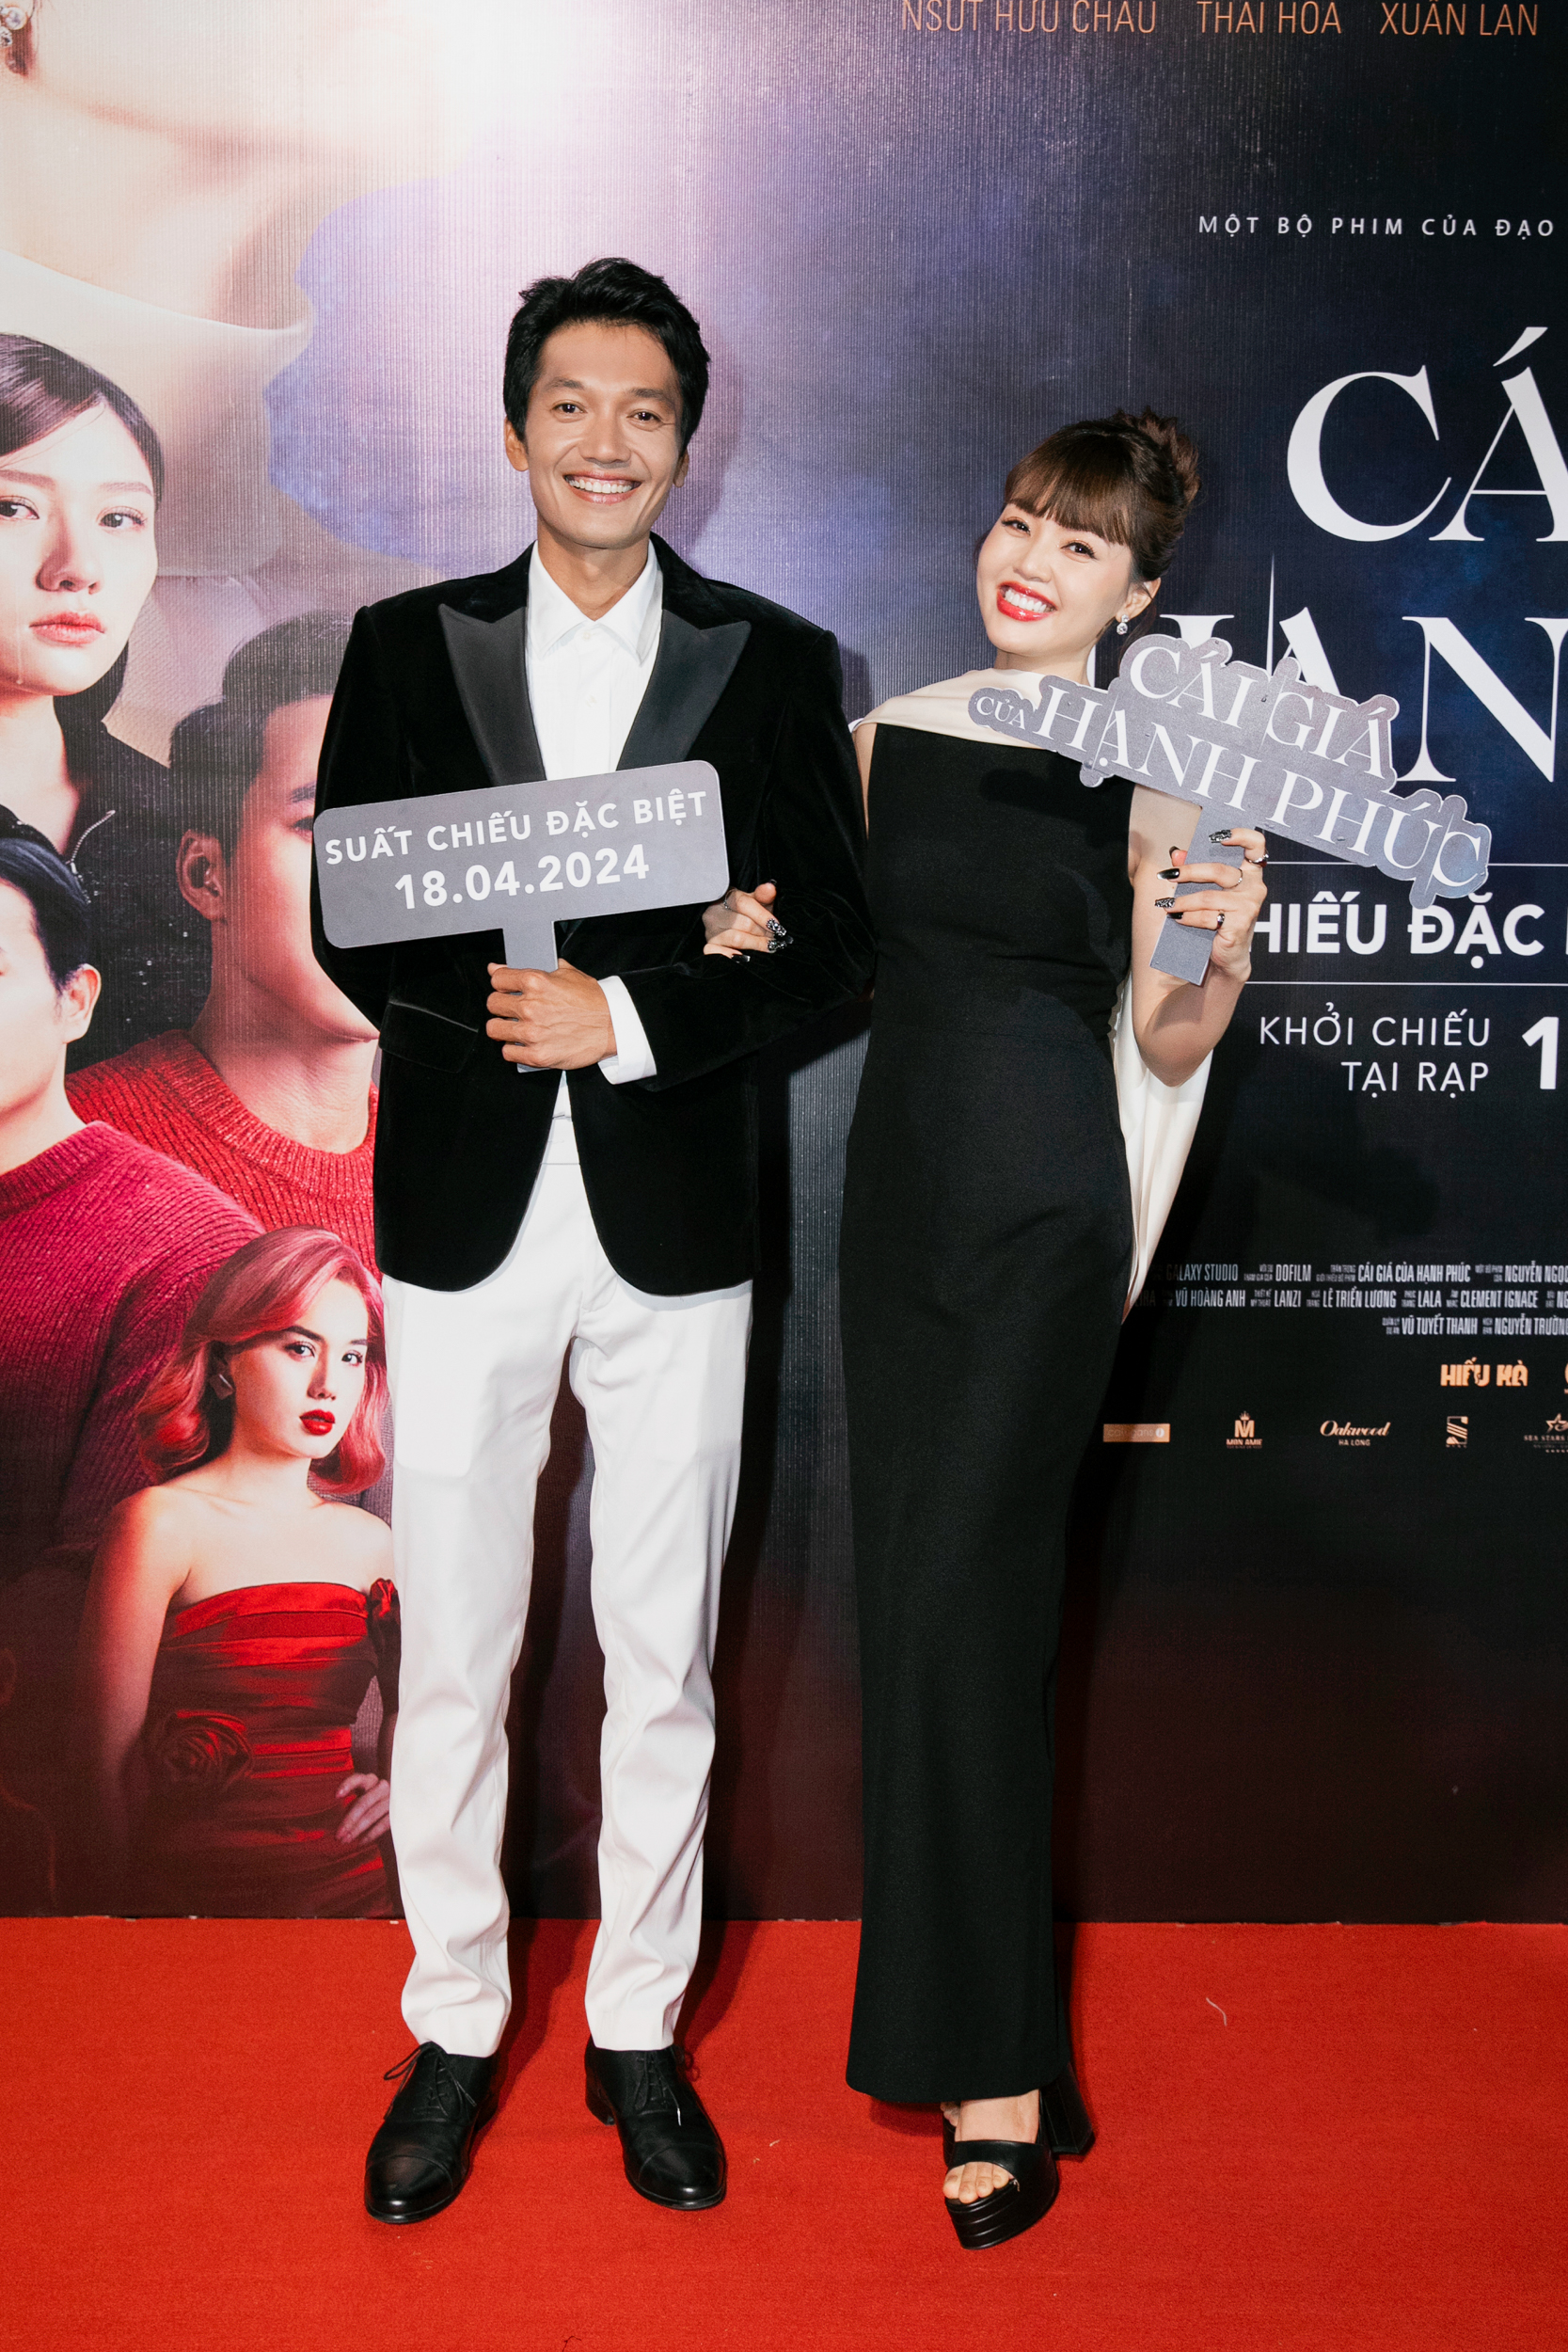 Quang Tuấn đưa vợ đến chúc mừng ê kíp phim Cái giá của hạnh phúc. Cuộc hôn nhân viên mãn của cặp đôi khiến nhiều người ngưỡng mộ